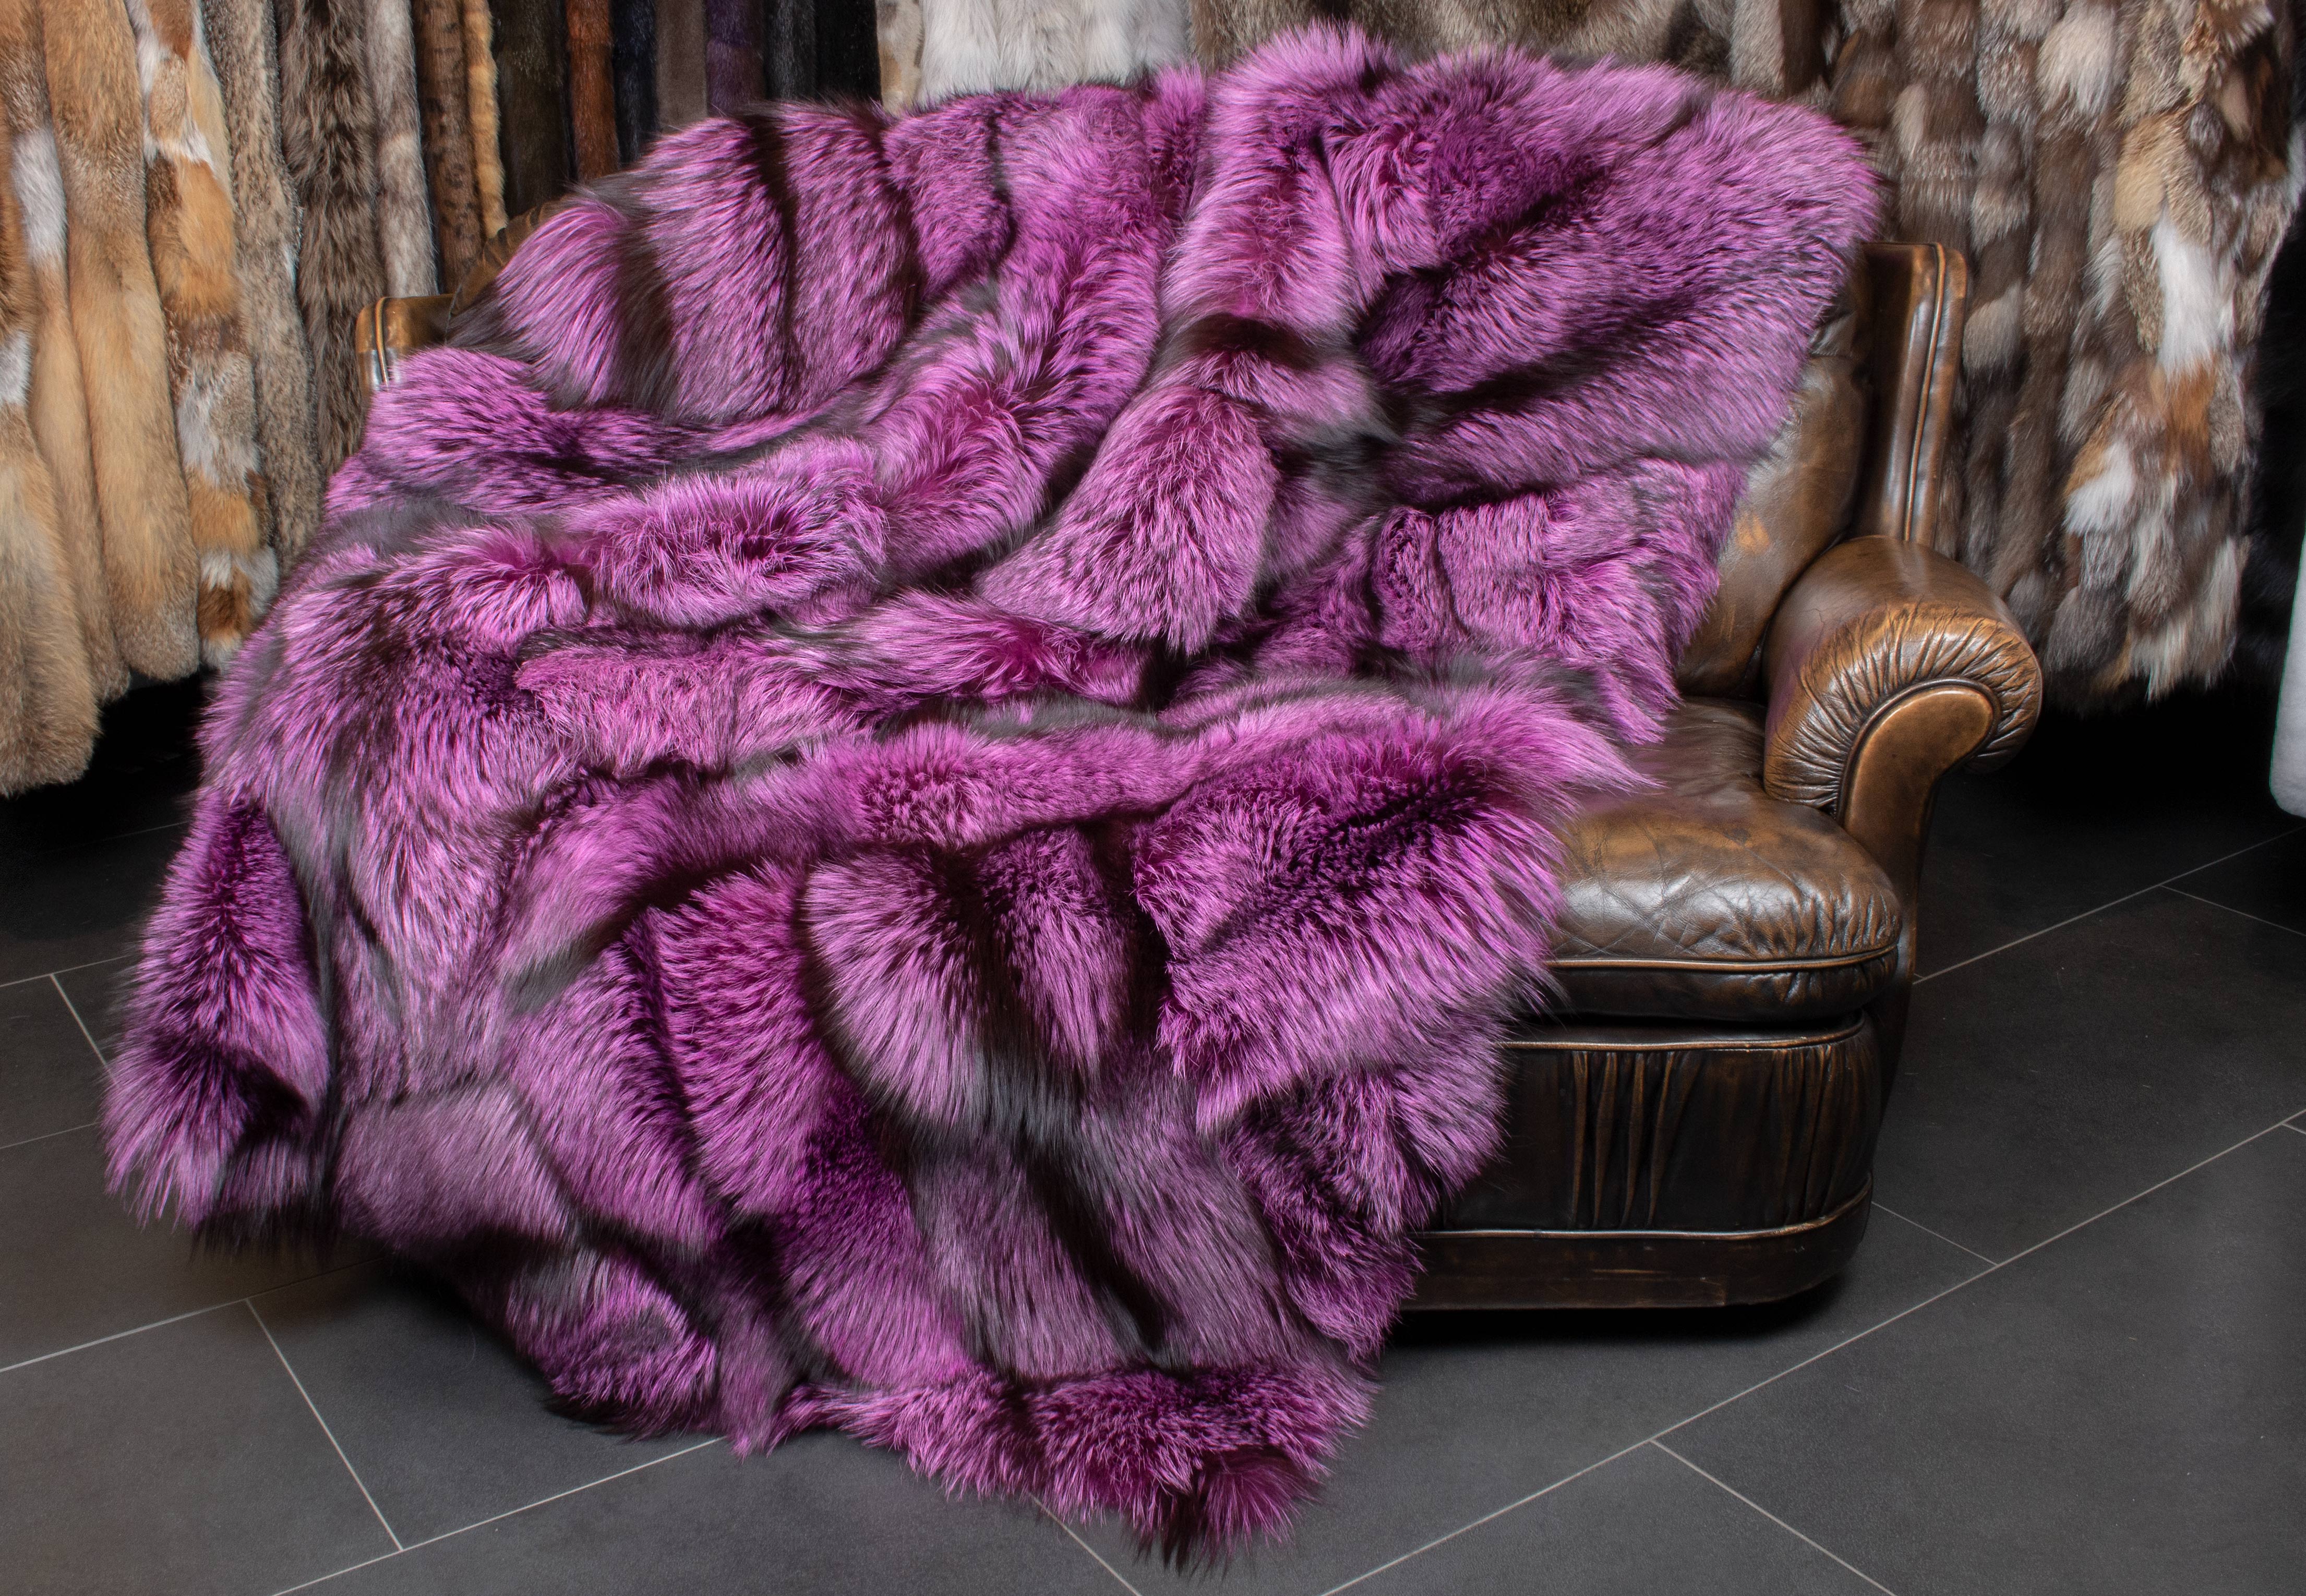 Silver Fox Fur Blanket in purple